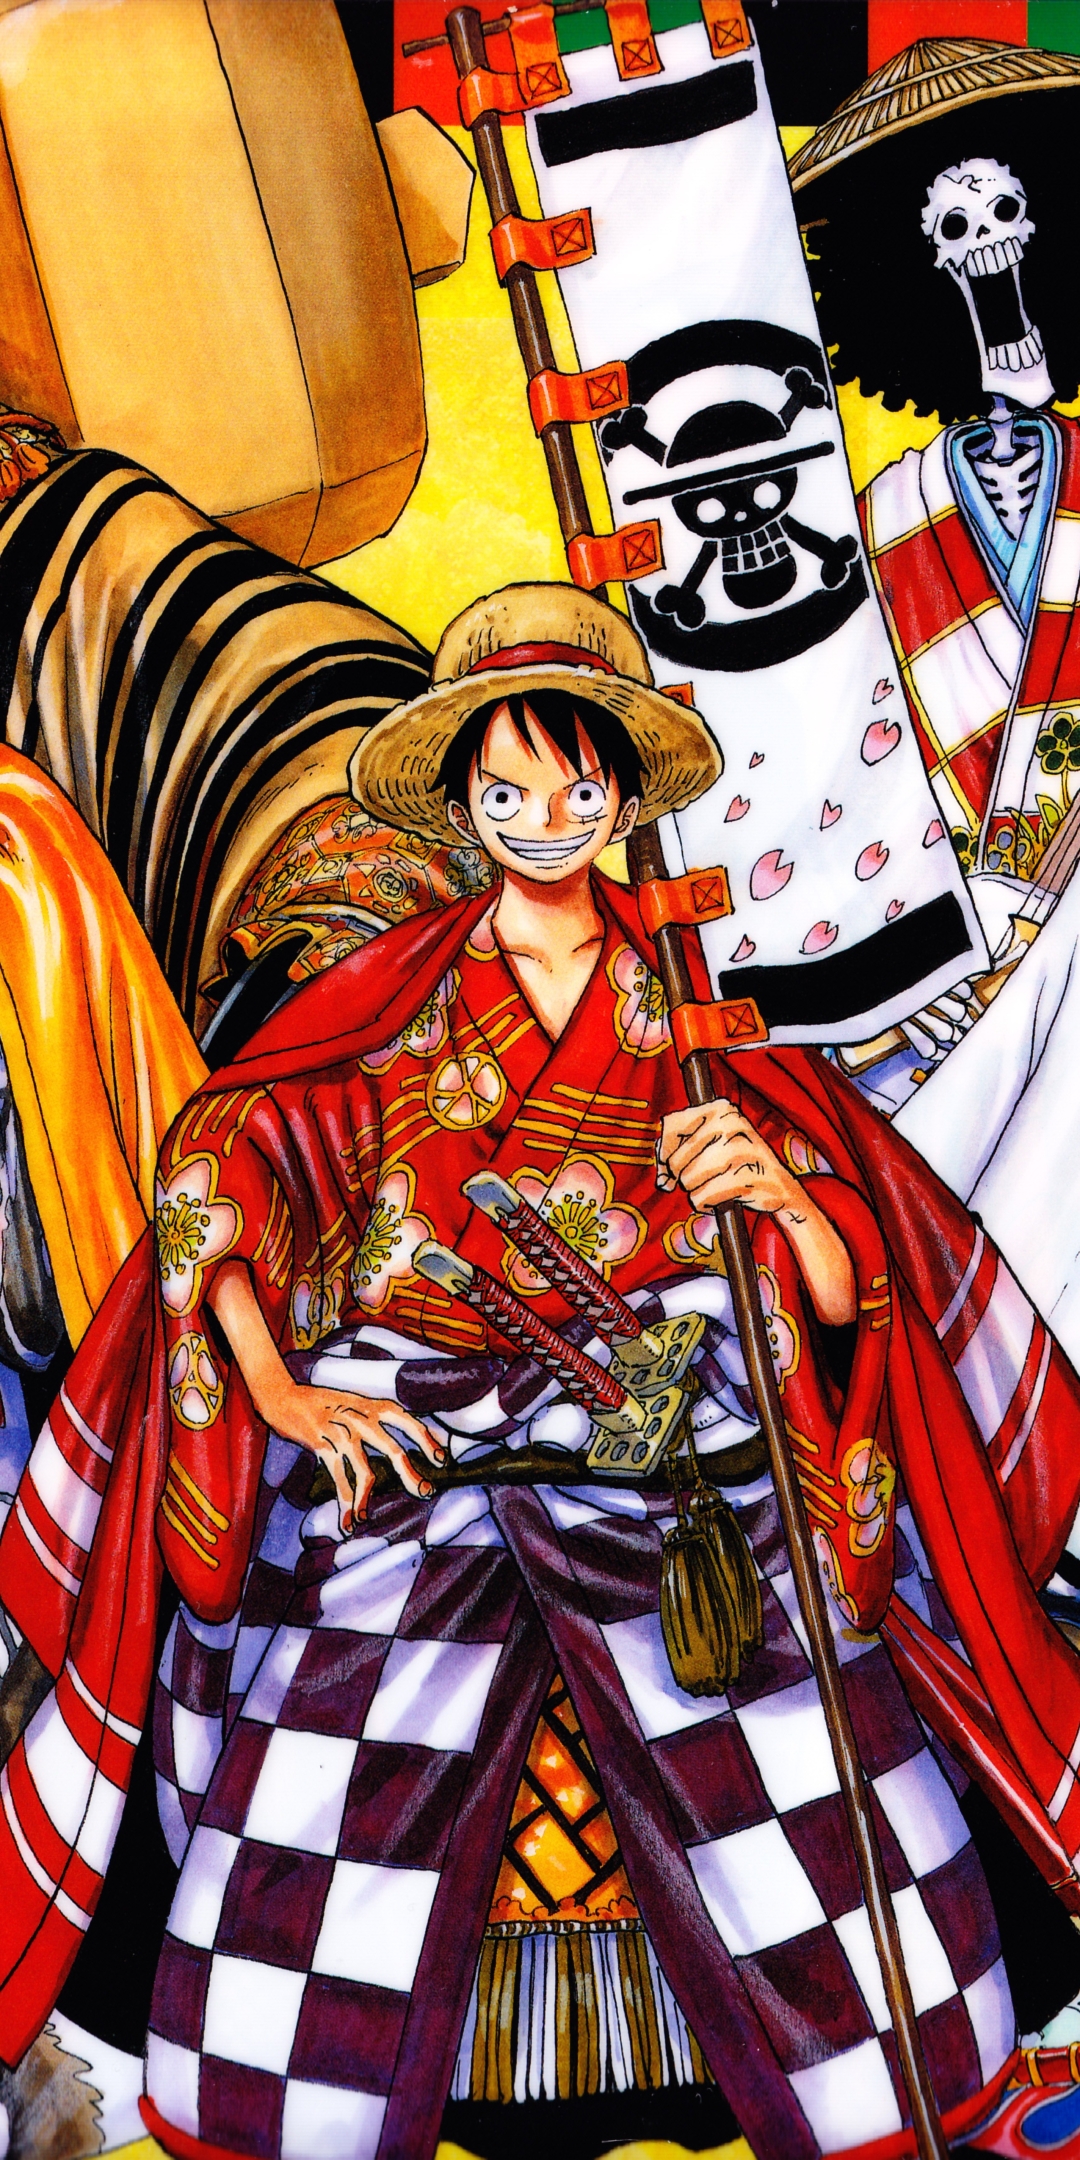 Ảnh Luffy đẹp nhất: Đối với fan hâm mộ One Piece, Ảnh Luffy đẹp nhất không được bỏ qua. Bức hình này cho thấy sự tập trung cao độ của Luffy. Cảnh tượng này khiến cho bạn cảm thấy cuốn hút và muốn tham gia cuộc phiêu lưu cùng anh ta. Hãy cùng tìm hiểu về hình ảnh đáng nhớ này.